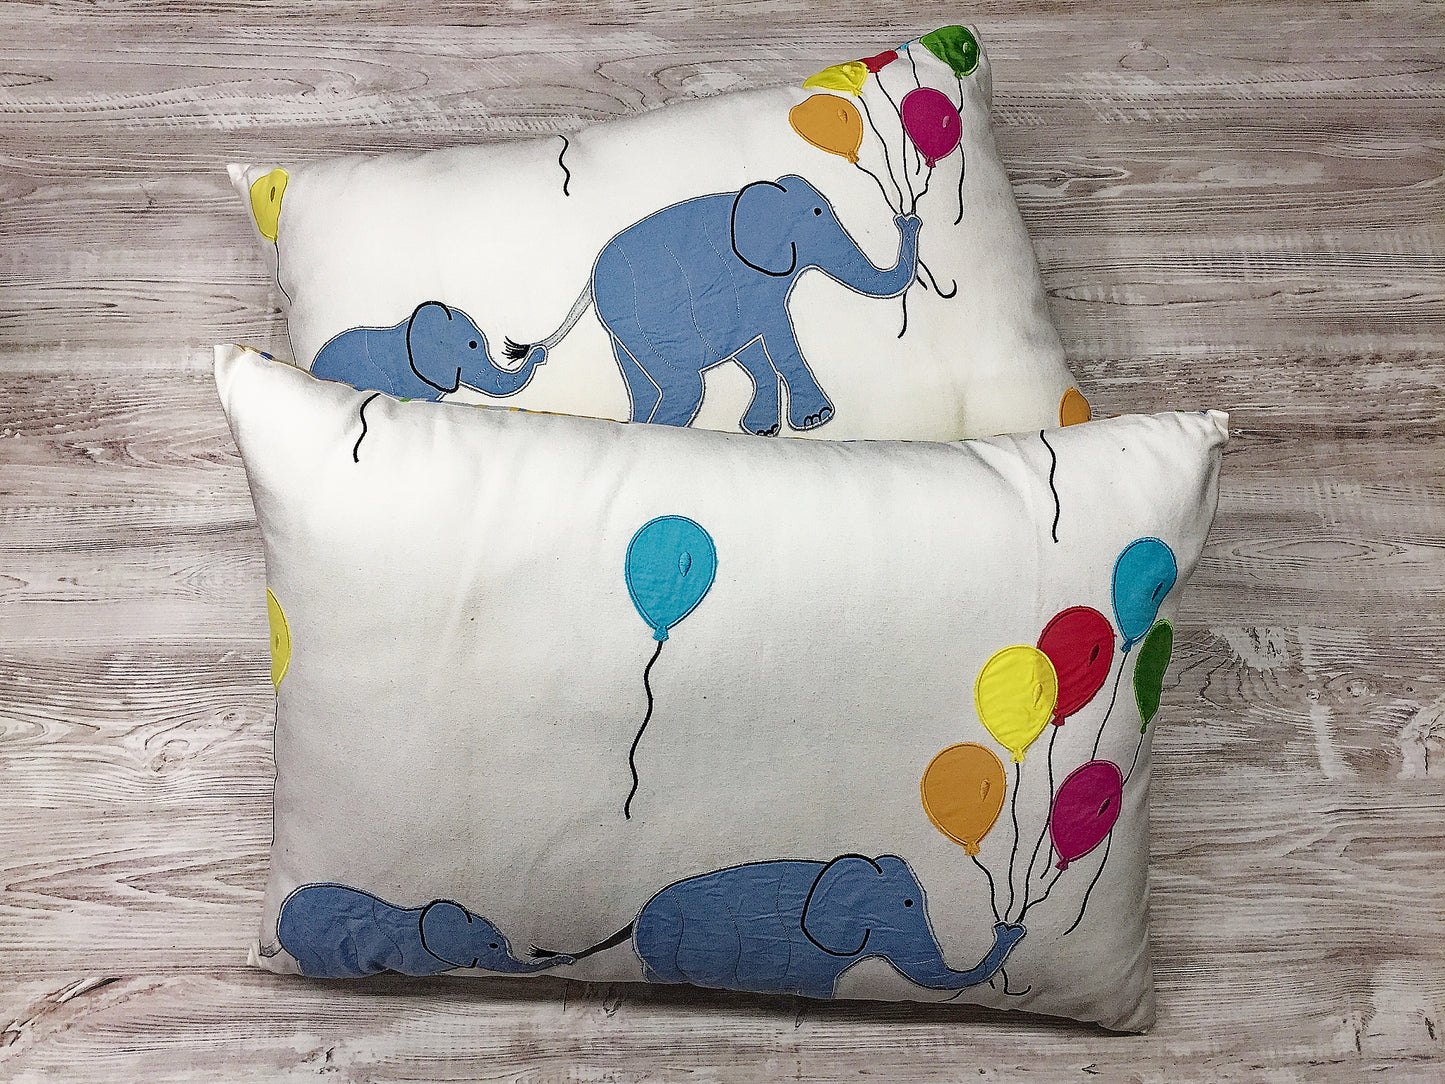 Luxury cushion "Elephant parade"